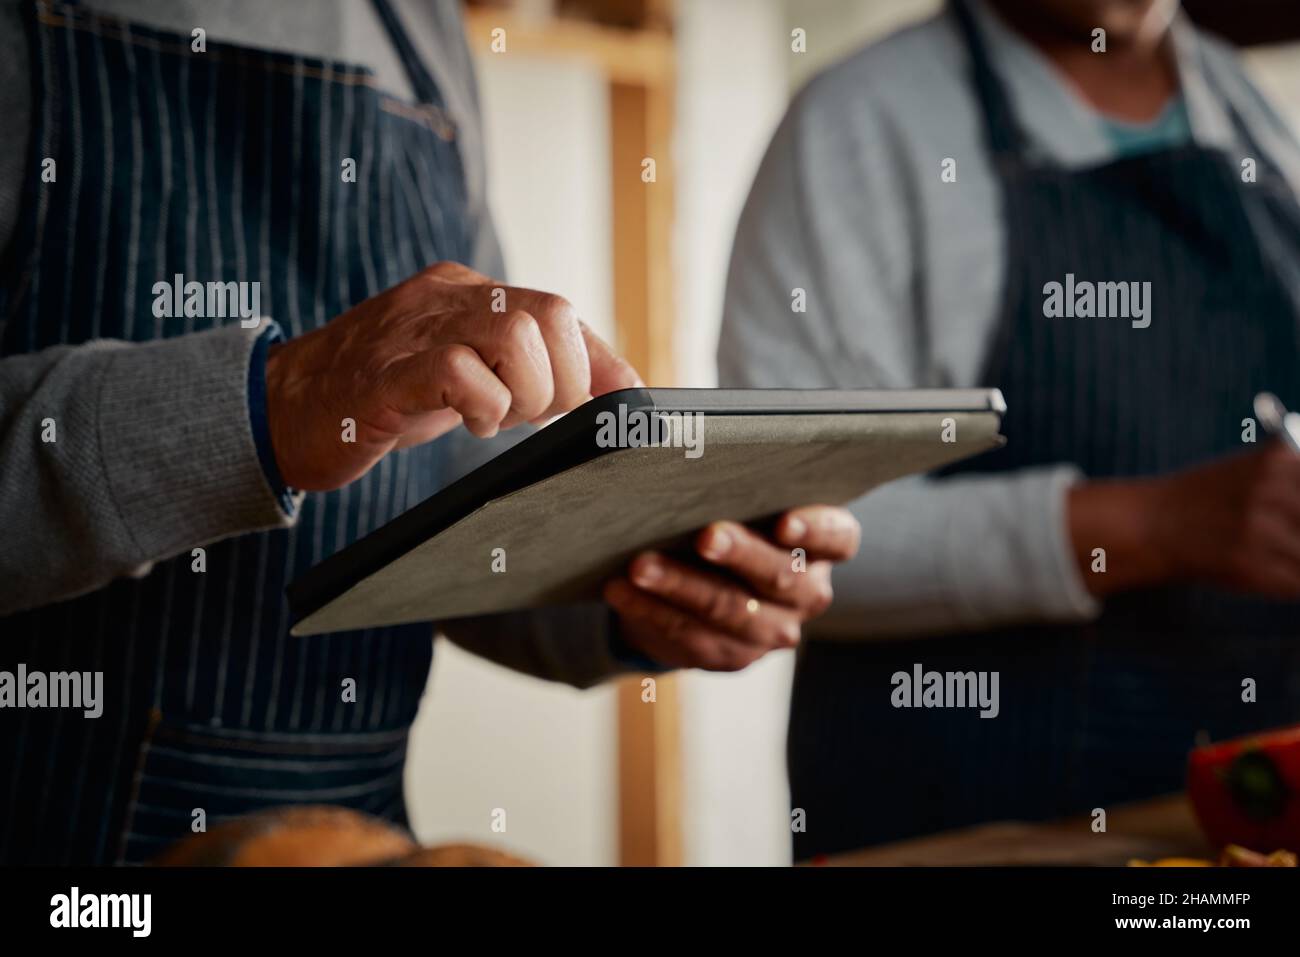 Hände von multikulturellen älteren Männern mit Tablette Rezept in der Küche zu erforschen. Glückliches Paar, das gesunde Mahlzeiten kocht. Stockfoto